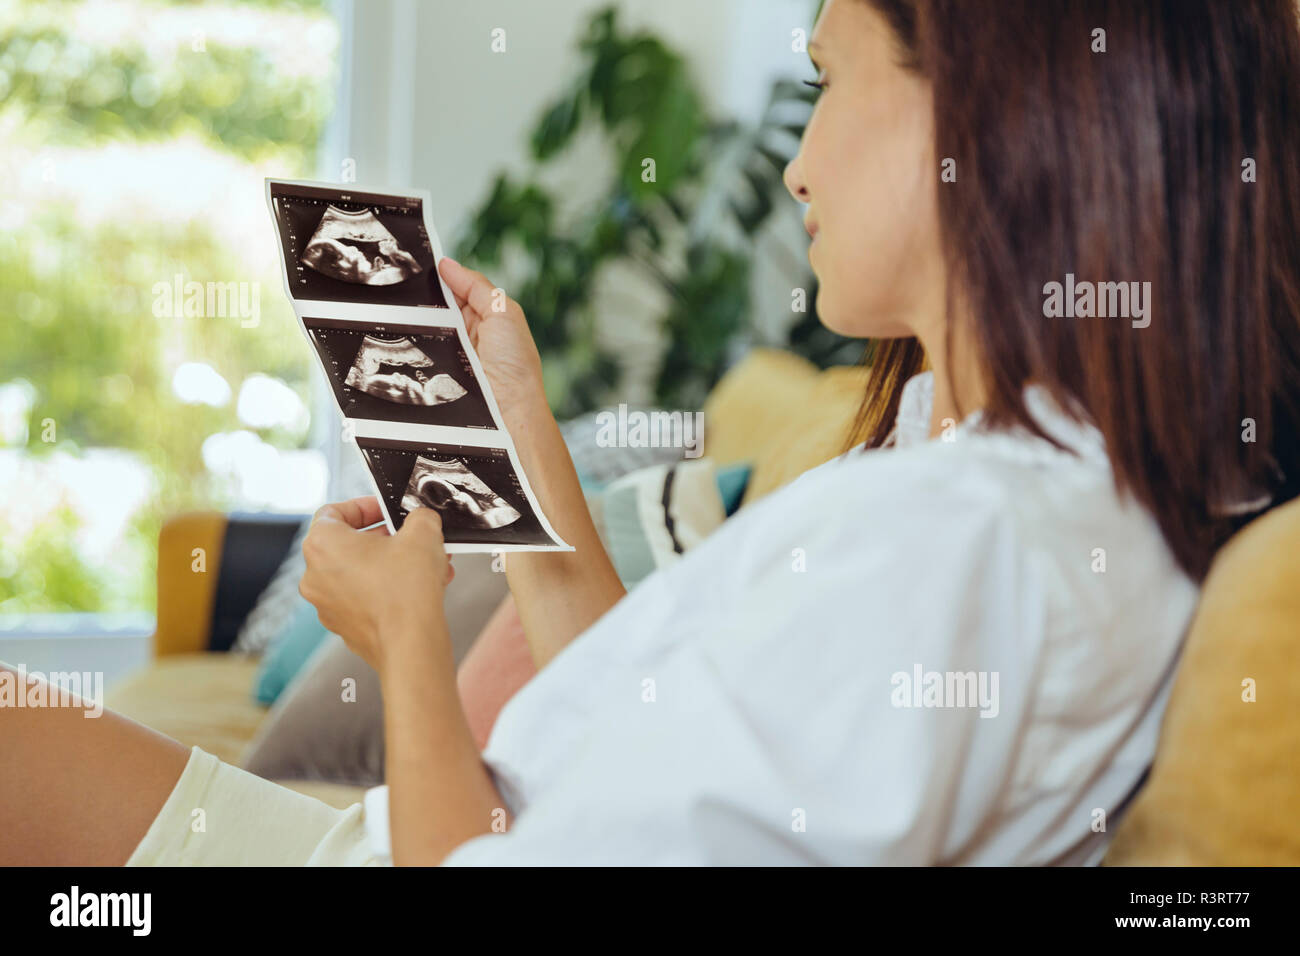 Frau auf der Suche nach Ultraschall Bilder von ungeborenen Kind auf der Couch Stockfoto